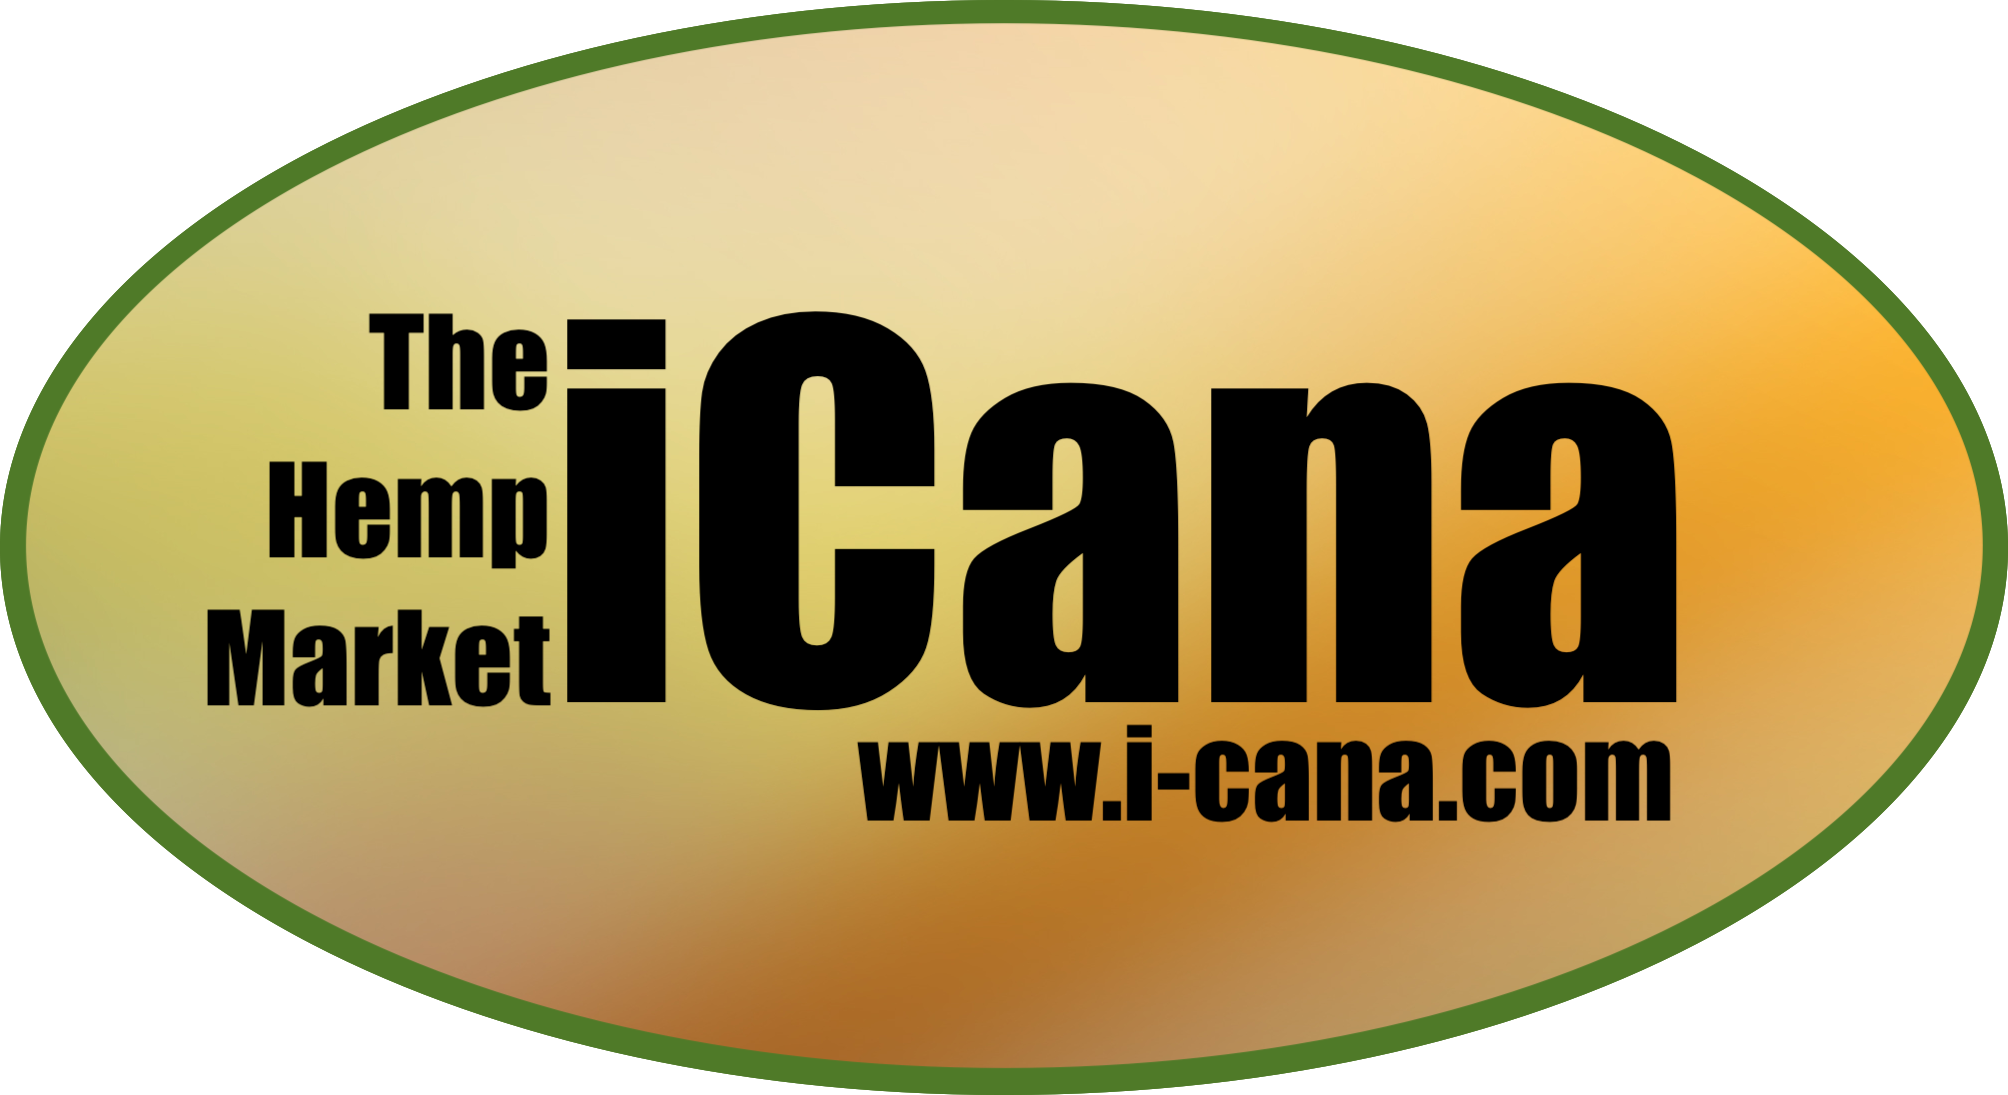 iCana-The Hemp Market